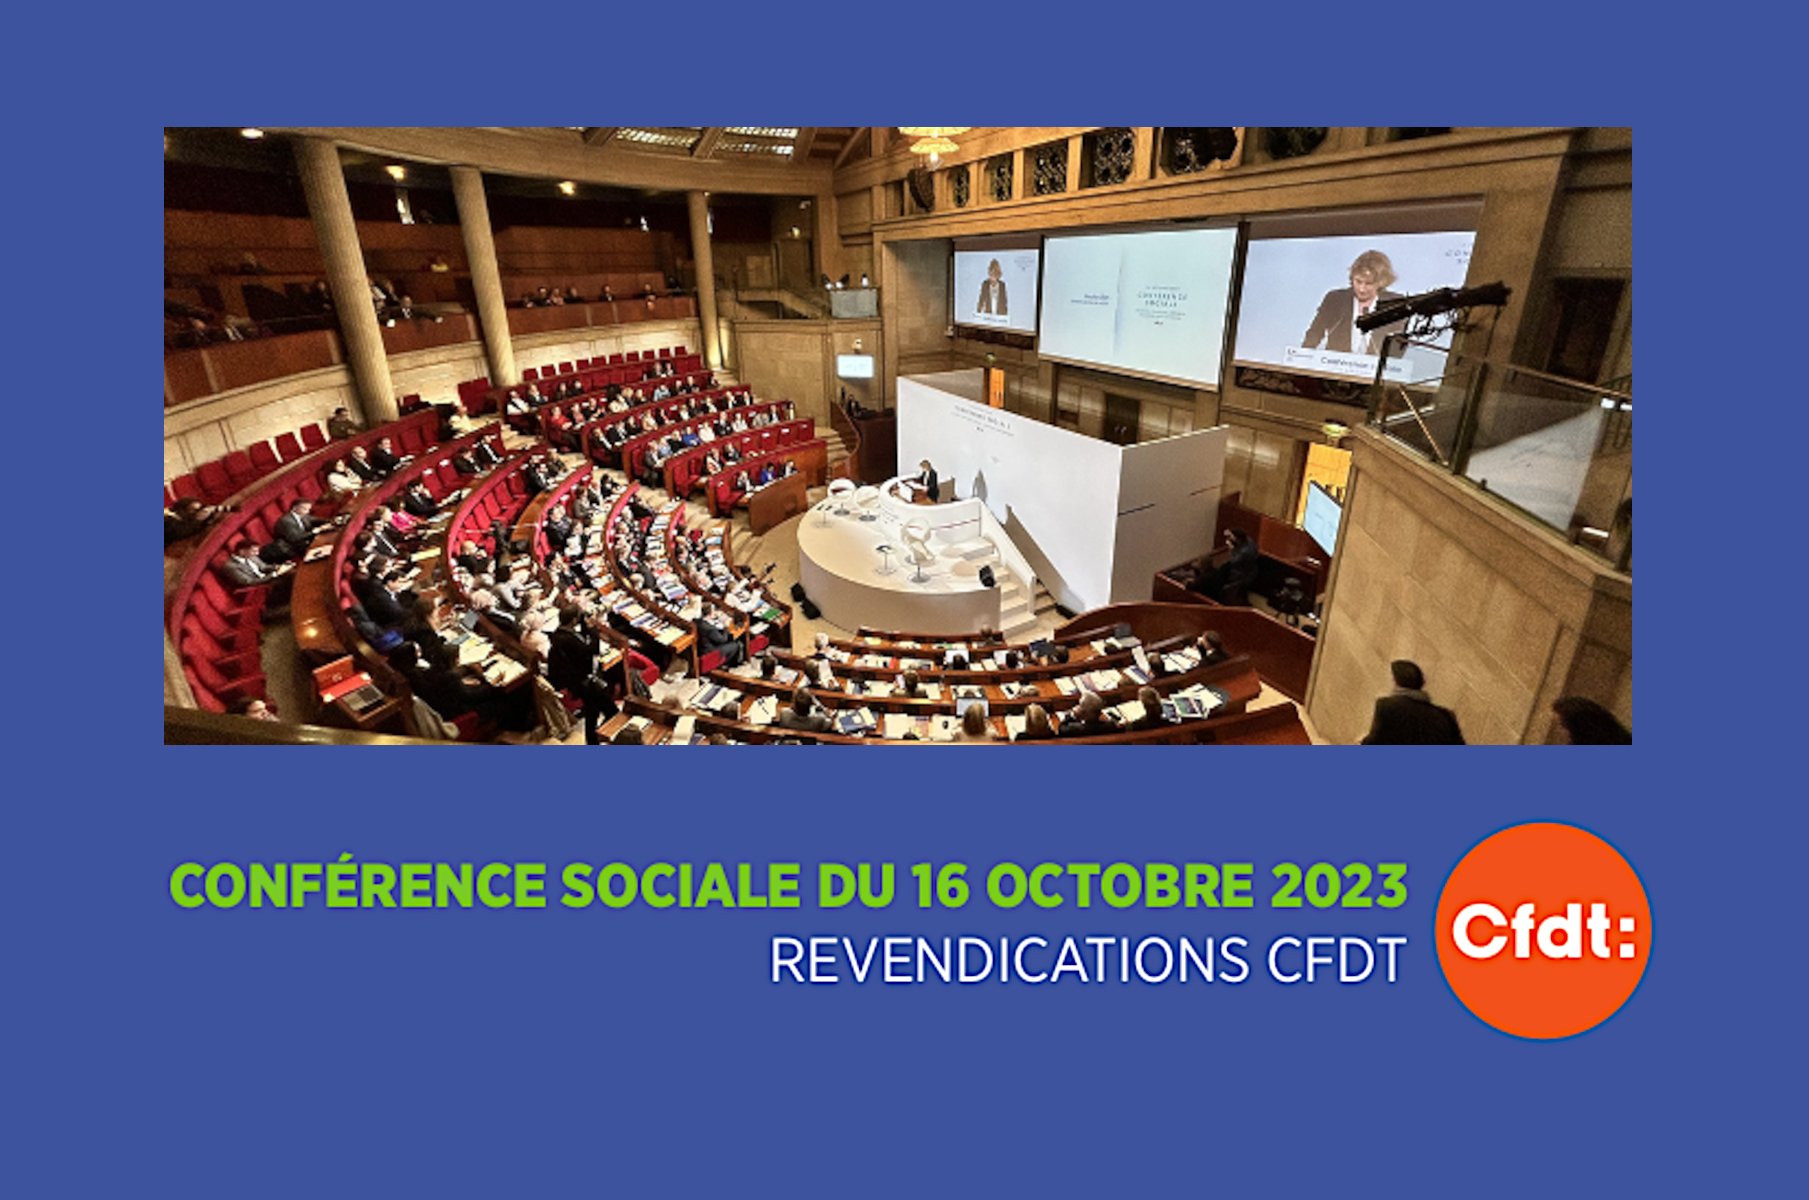 La CFDT a présenté ses revendications lors de la Conférence sociale du 16 octobre 2023